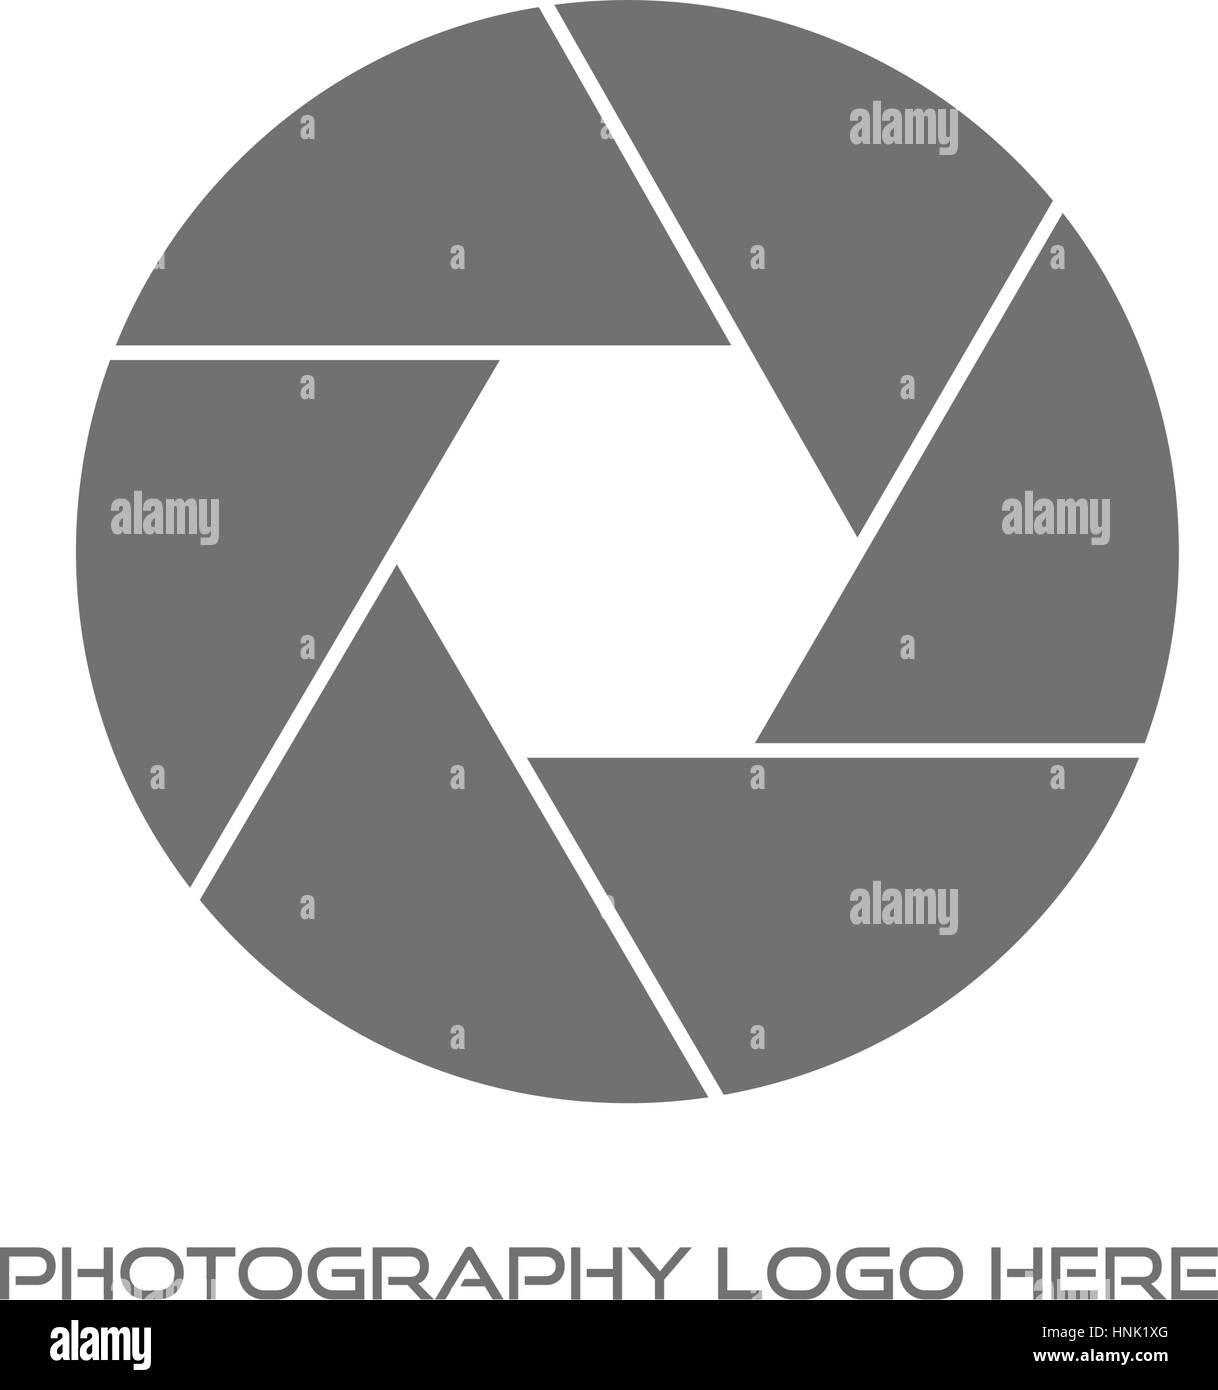 Fotograf / Fotografie Logo Design Stock Vektor